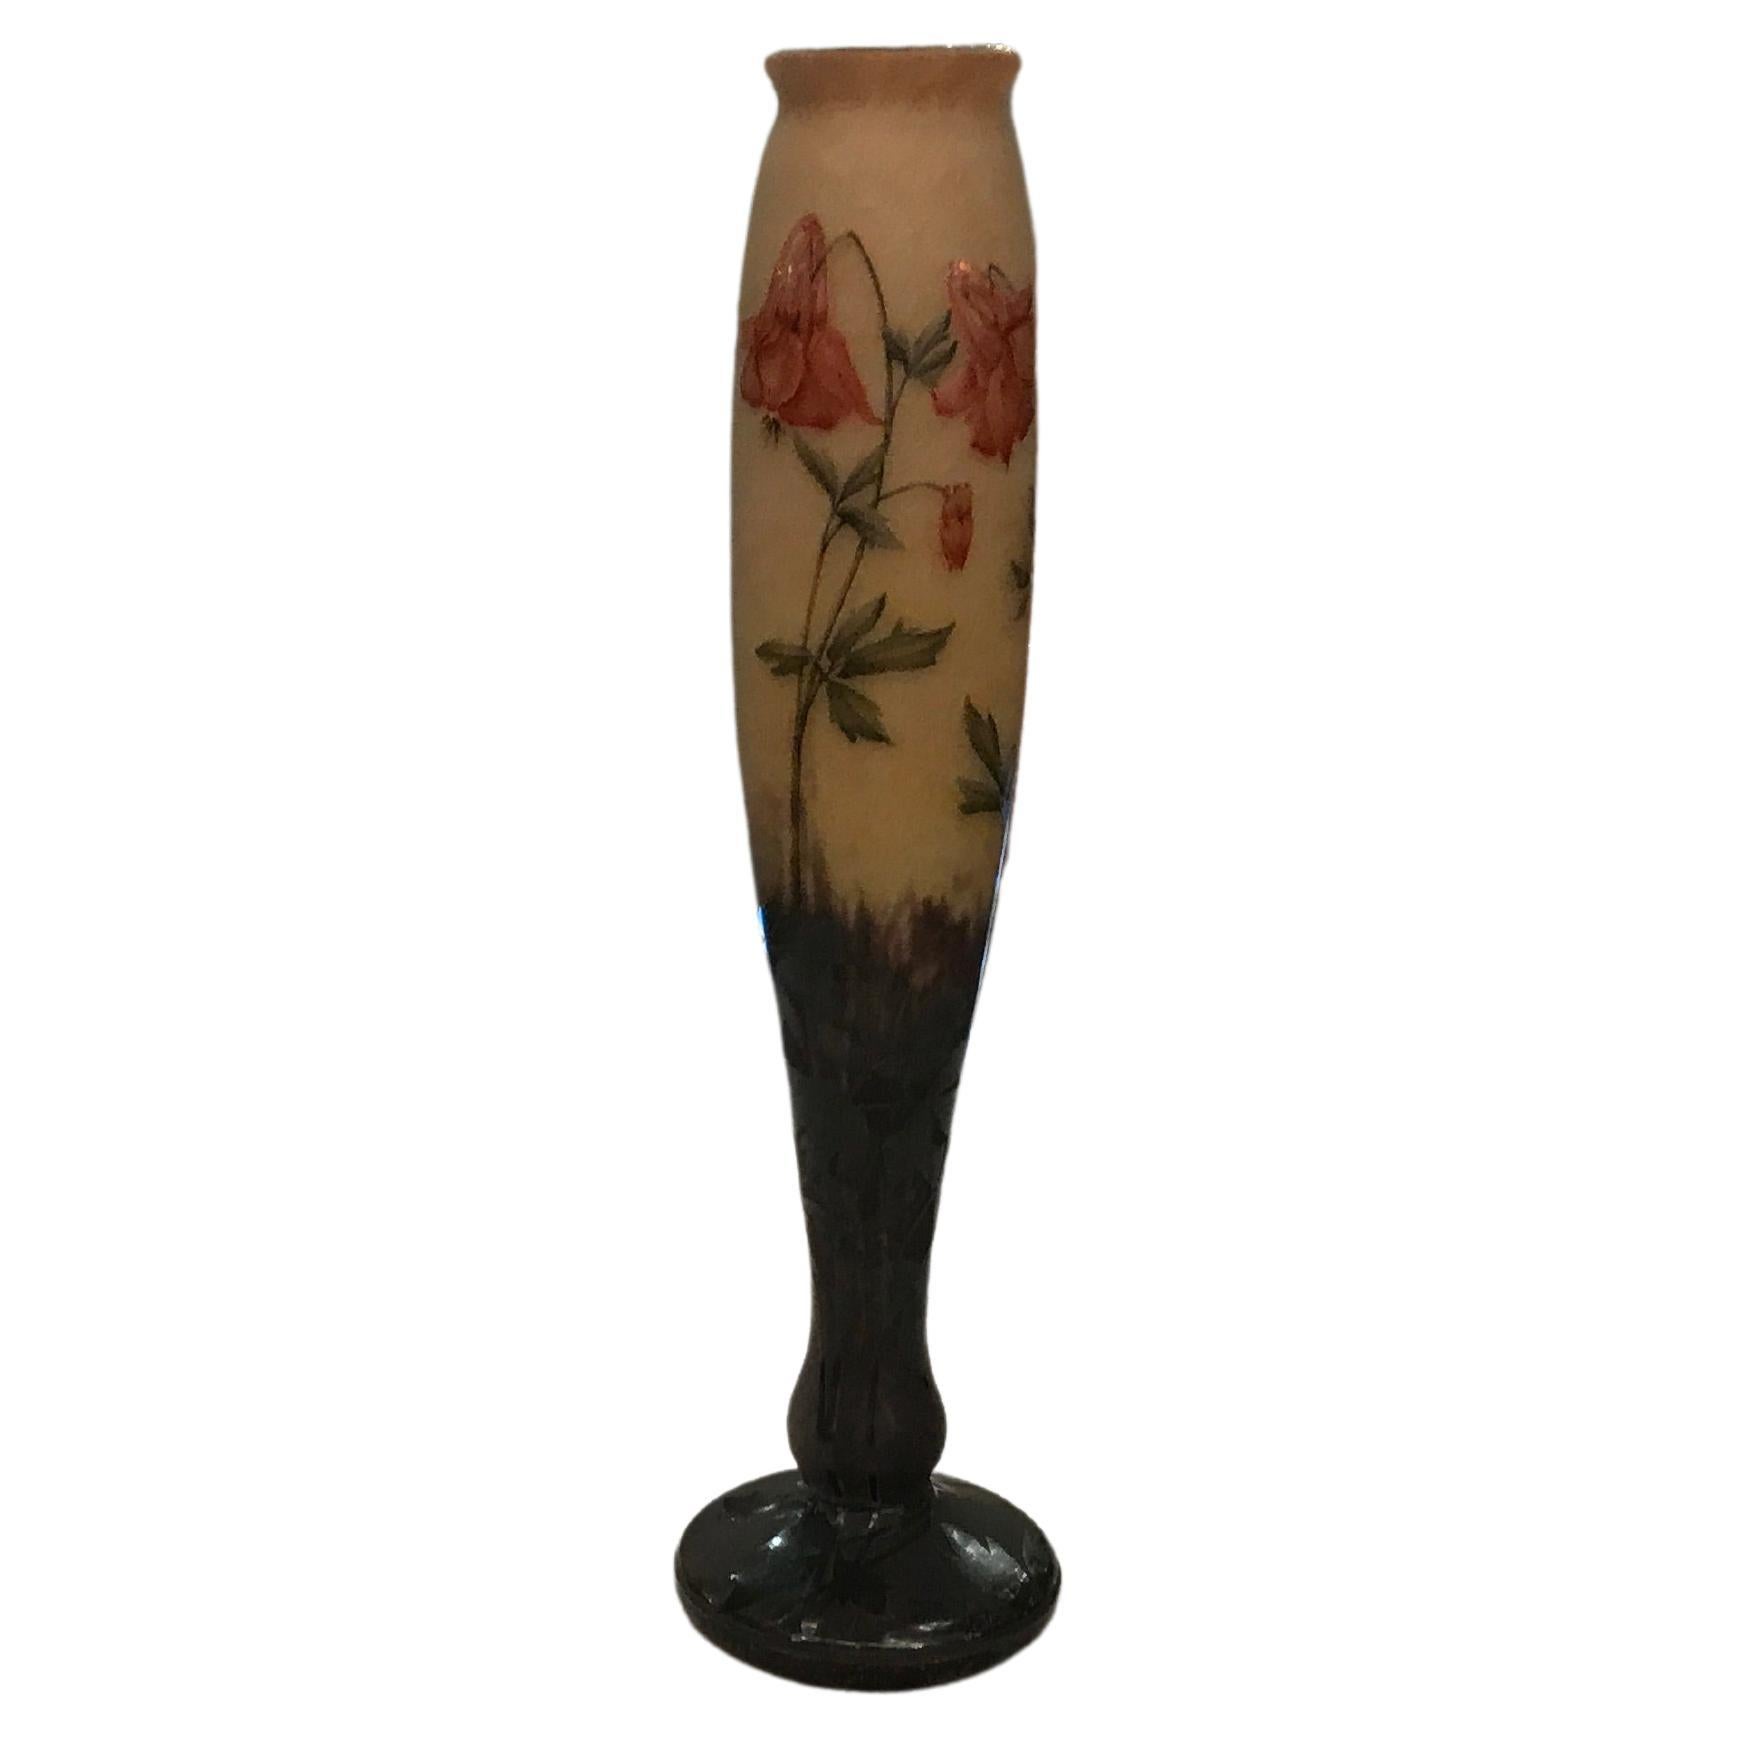 Vase, Sign: Daum Nancy, France, 1903, Style: Jugendstil, Art Nouveau, Liberty